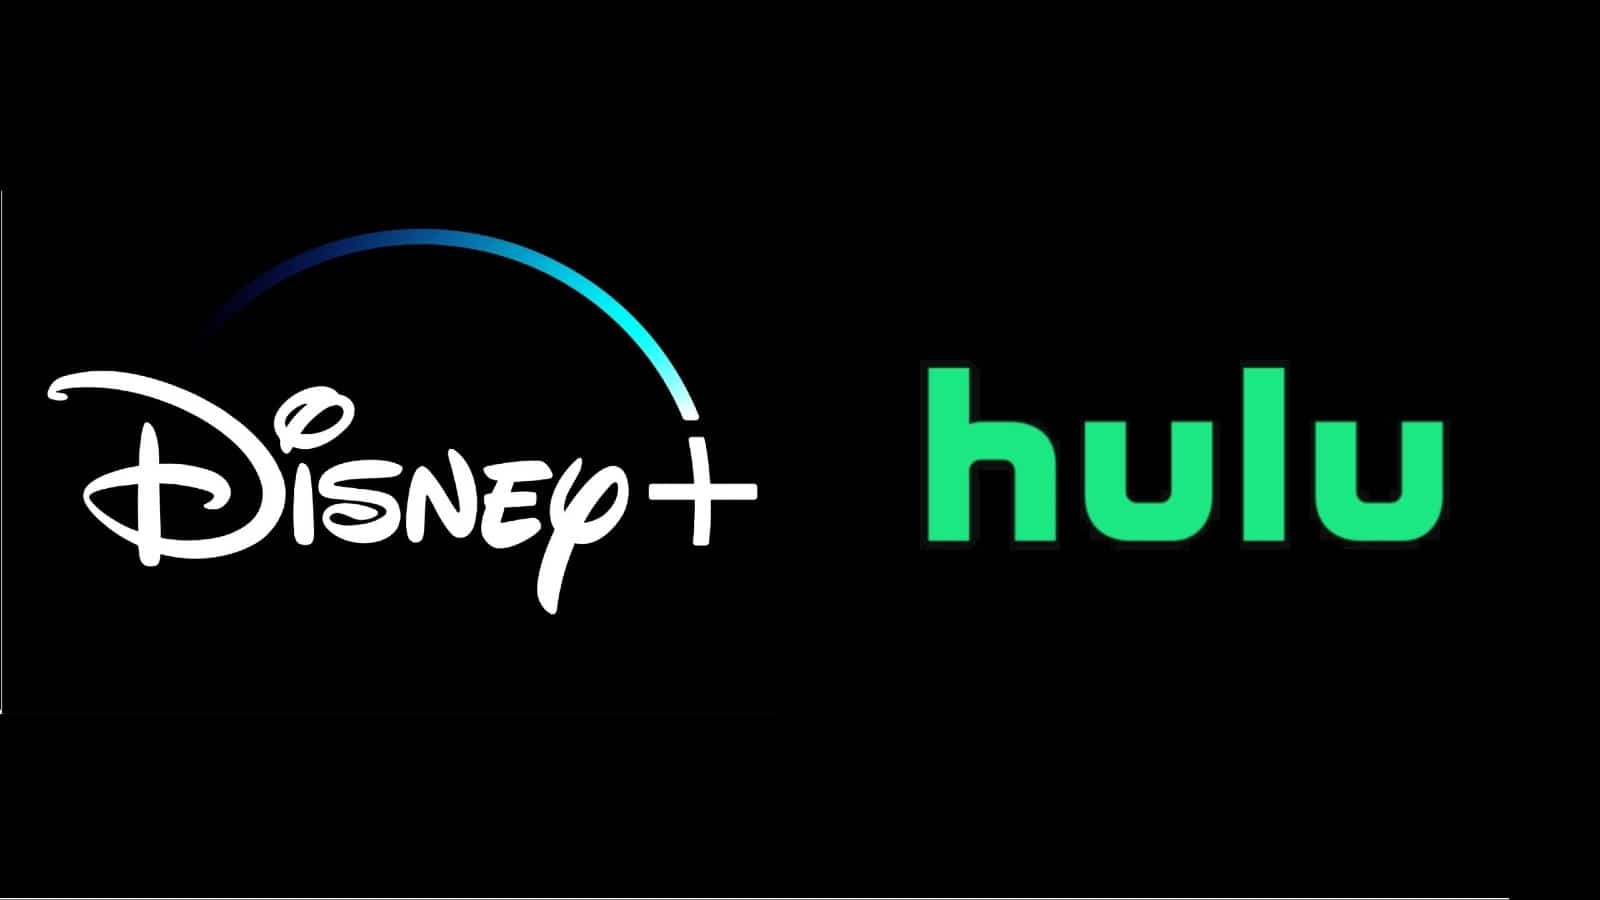 Disney+ Hulu, Disney+ και Hulu ενώνονται σε μία εφαρμογή